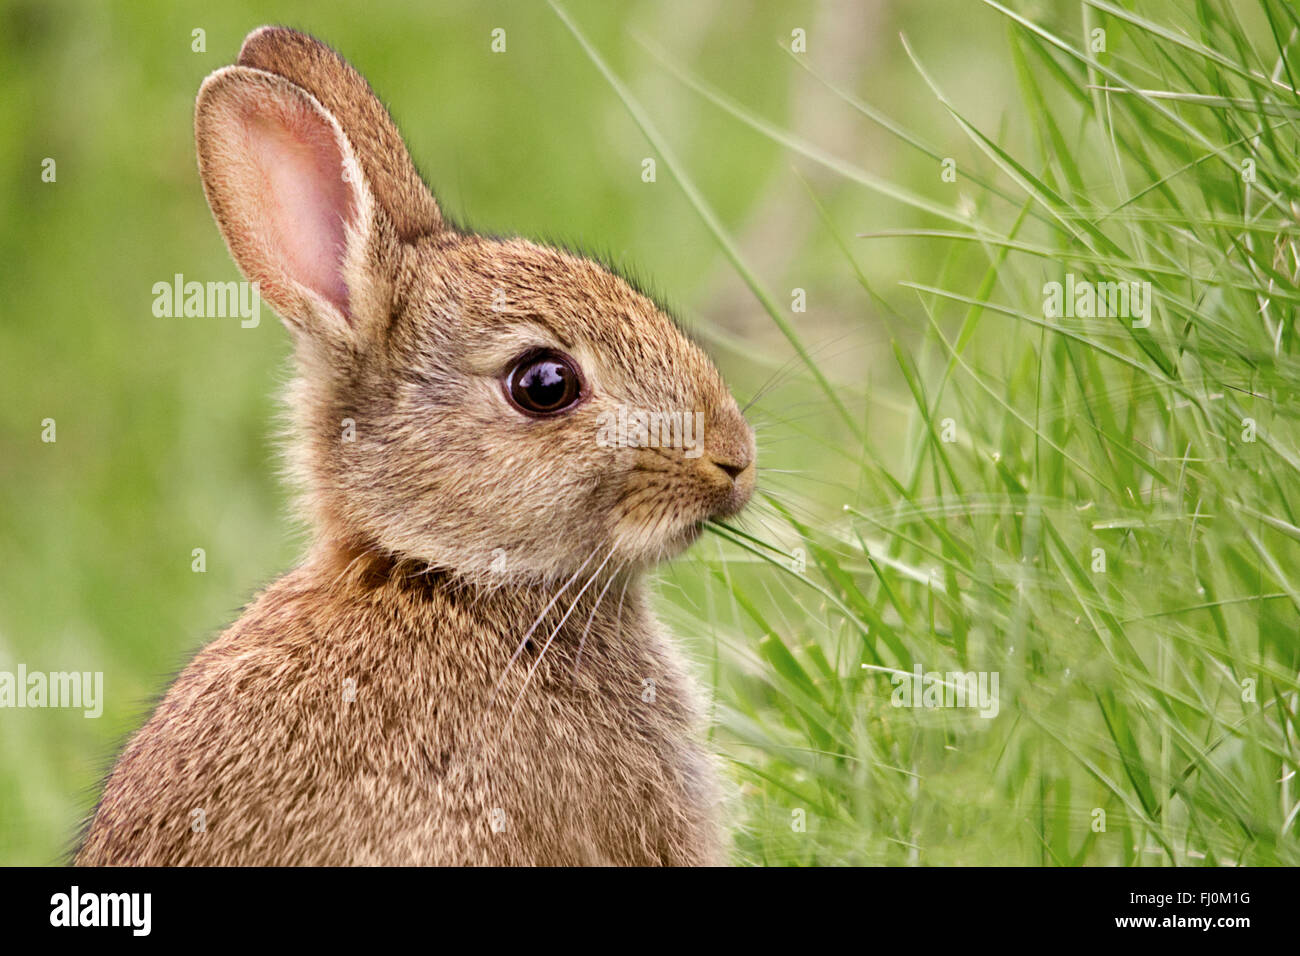 Kaninchen (oryctolagus cunniculus). Kopf und Schultern Portrait im Querformat. Helles Auge, essen Gras Kopf oben Seitenansicht weichen, grünen Hintergrund. Stockfoto